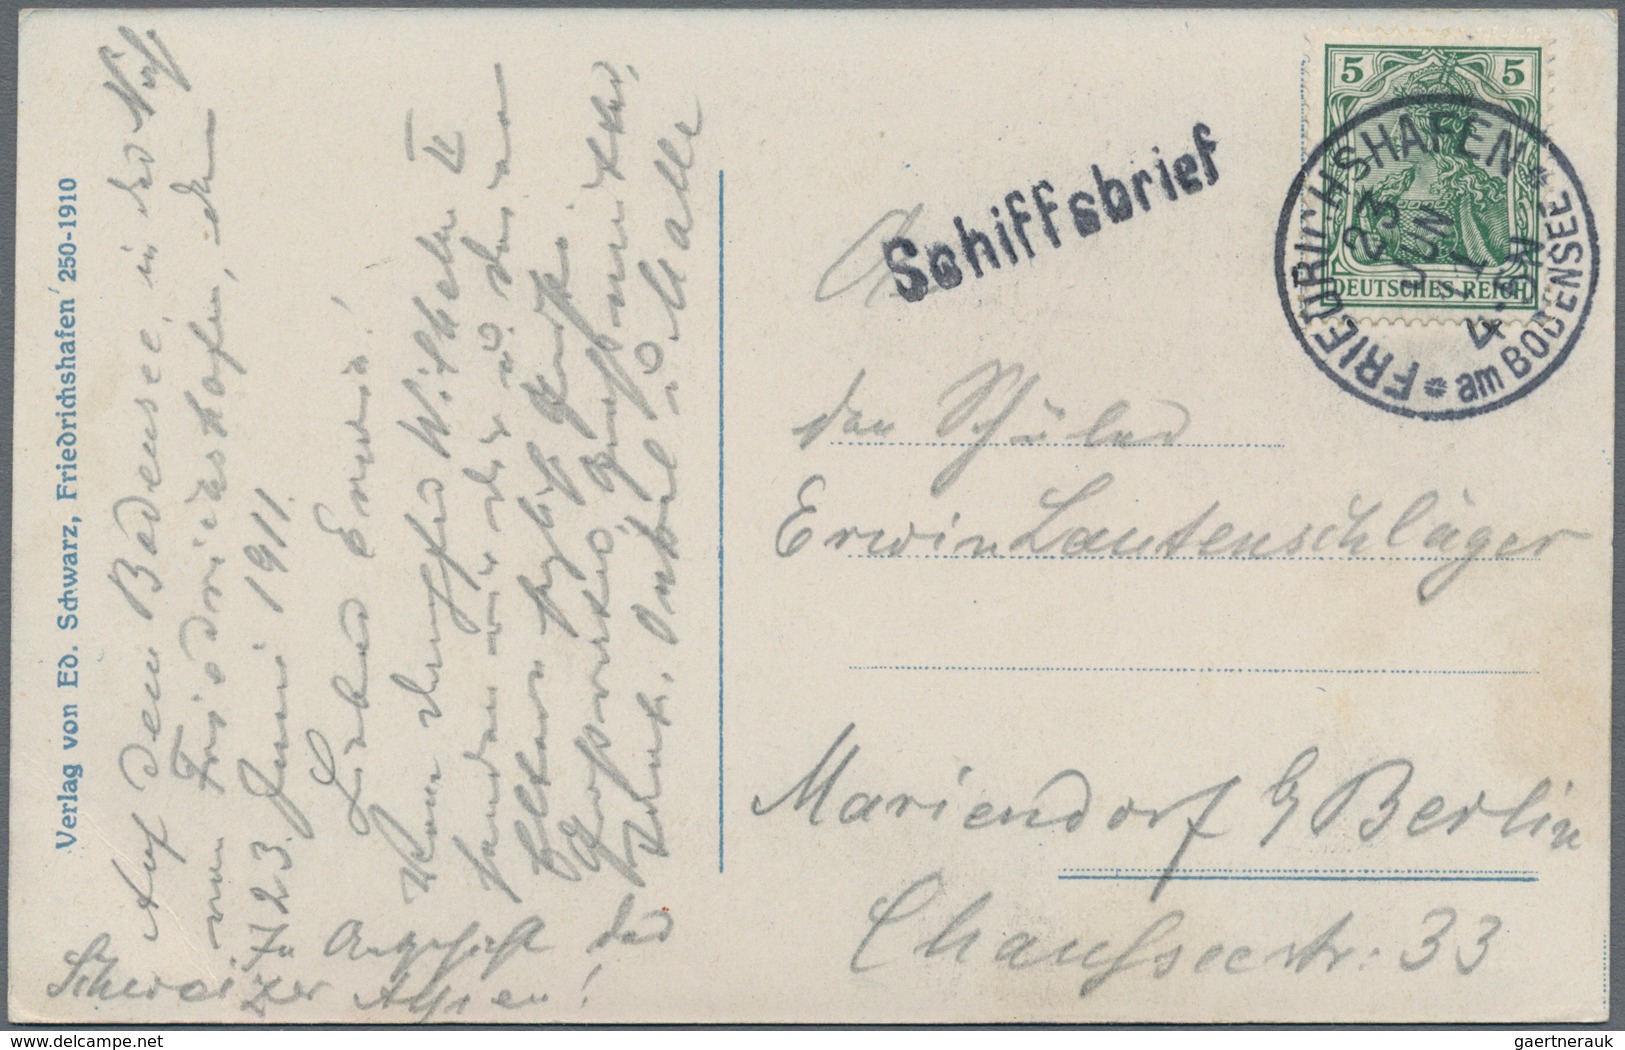 Bodenseeschiffspost: 1757/1910 ca., sehr gehaltvolle und detaillierte Sammlung der Schiffspost auf d